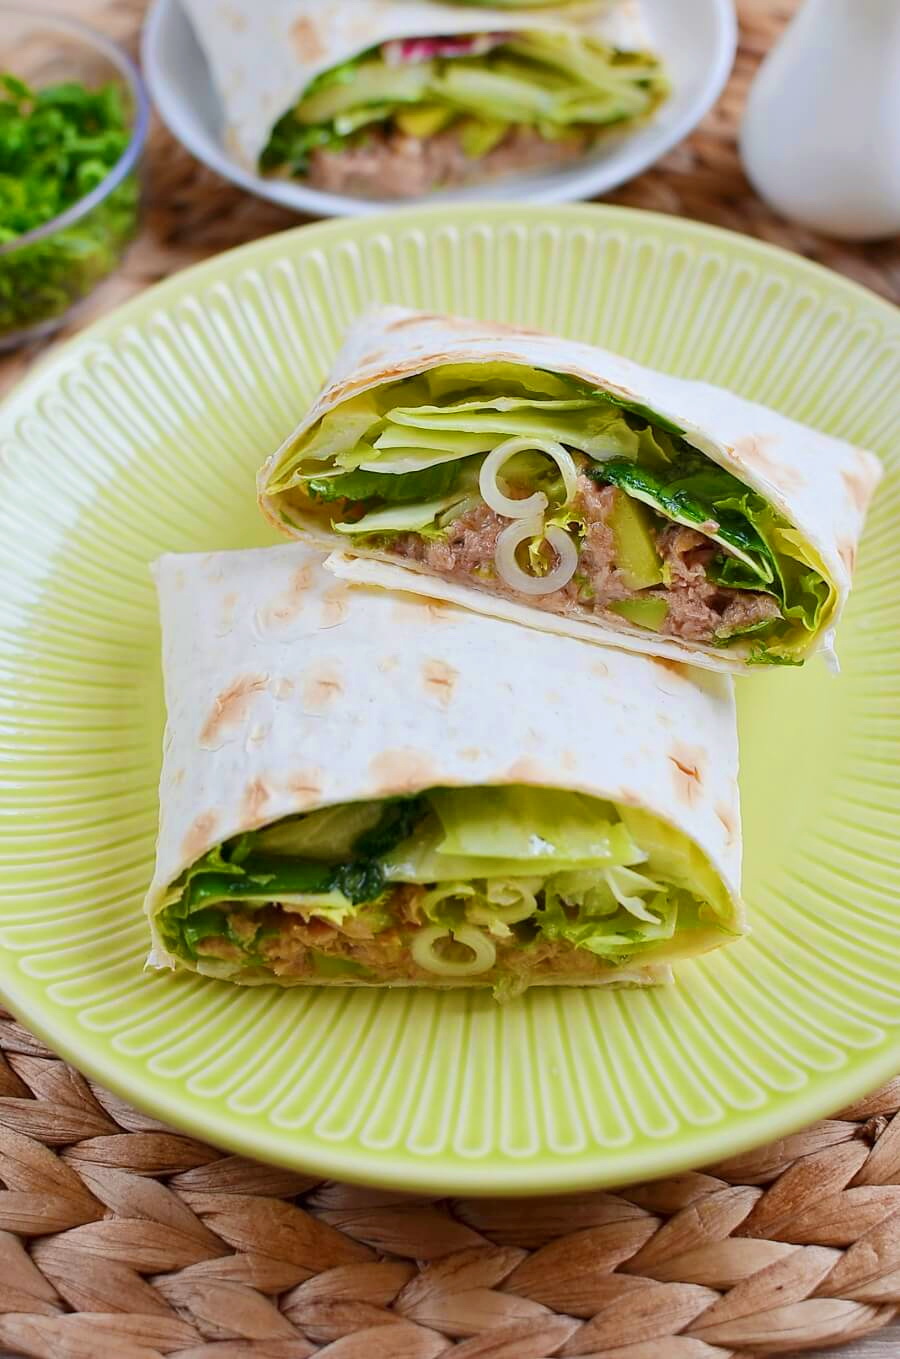 Avocado and Tuna Salad Wraps Recipe - Cook.me Recipes